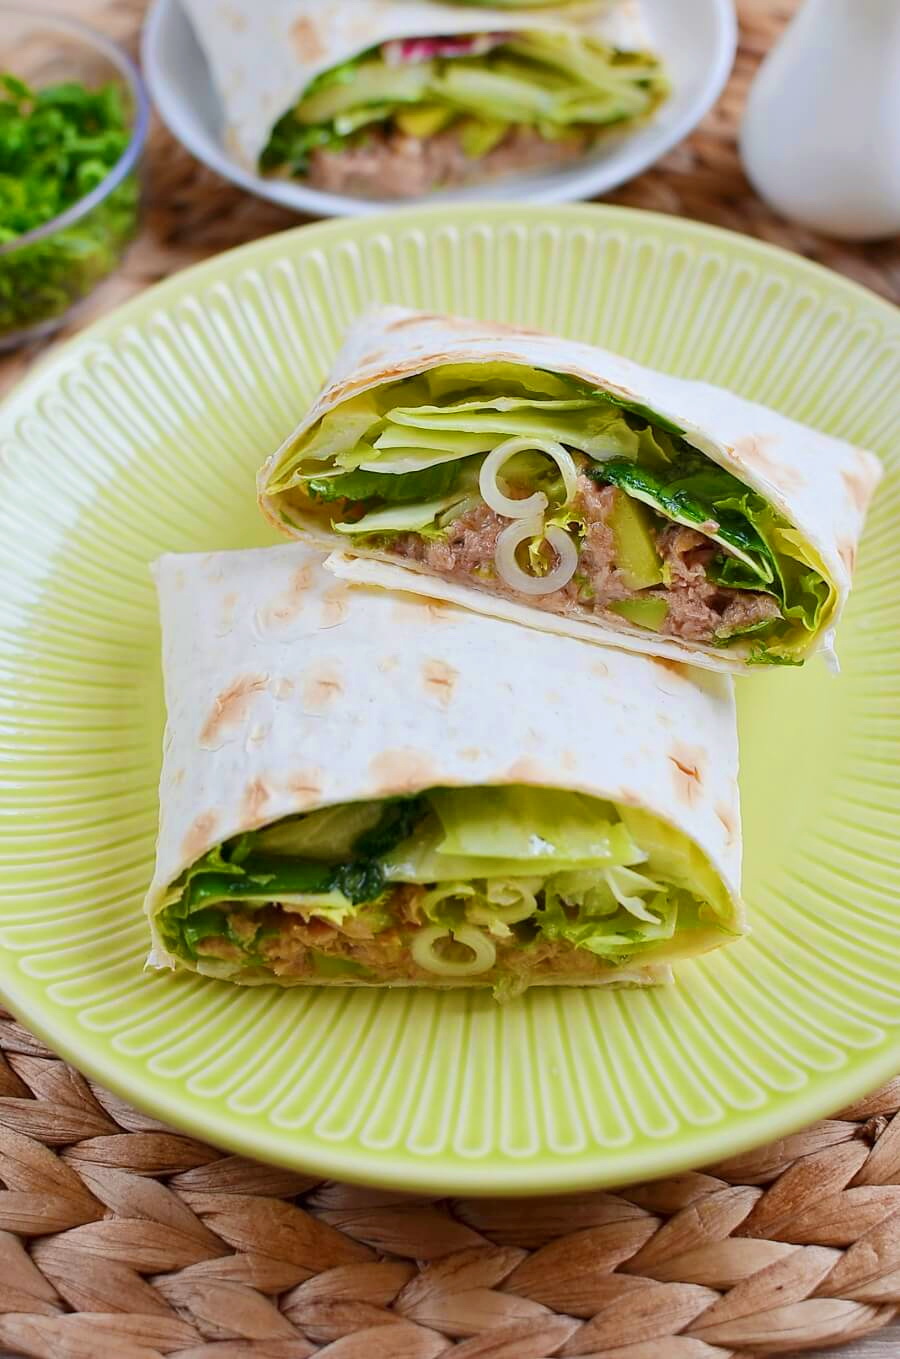 Avocado and Tuna Salad Wraps Recipe - Cook.me Recipes